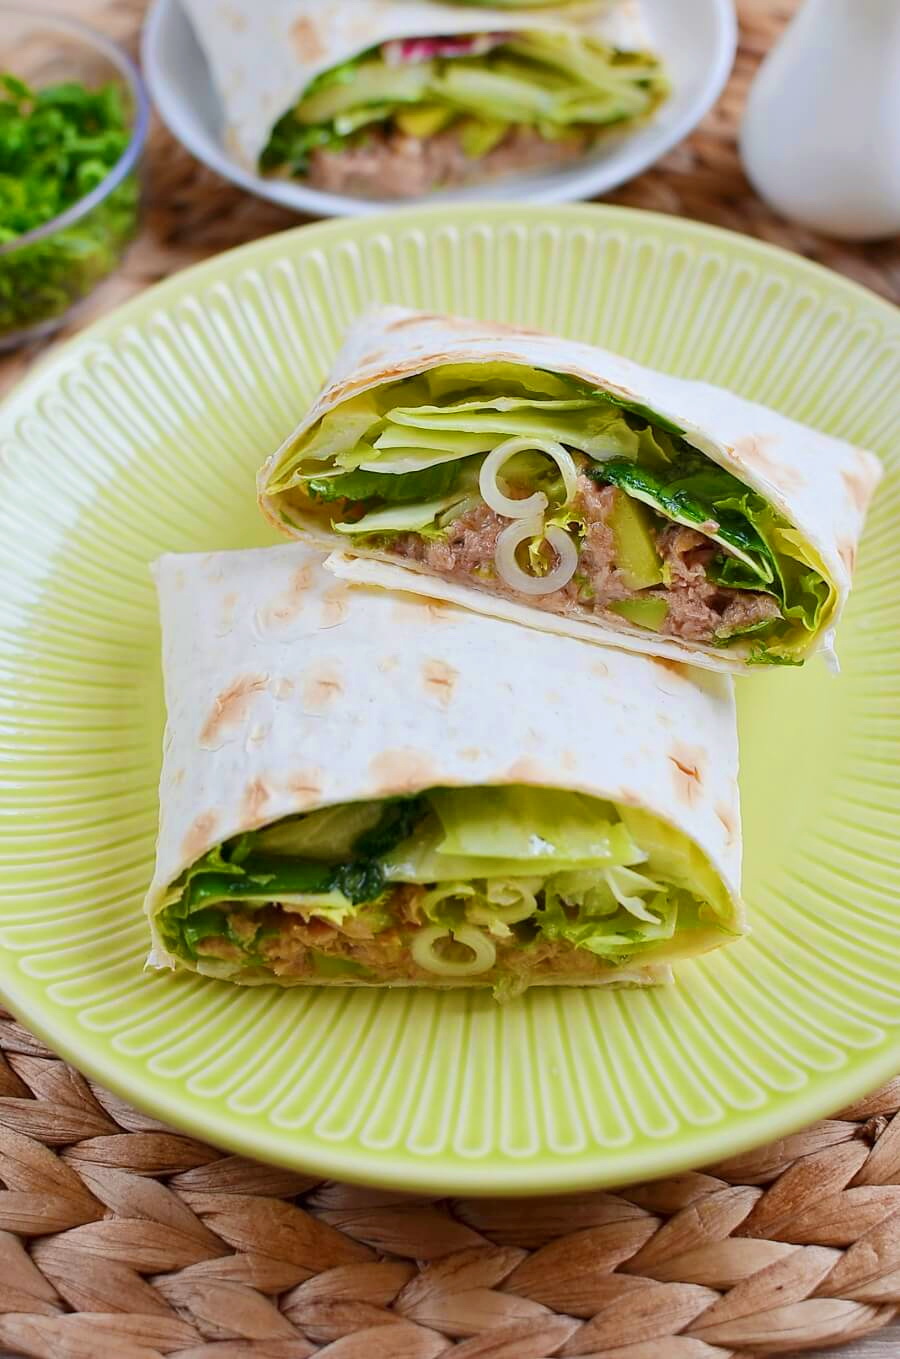 Avocado and Tuna Salad Wraps Recipe - Cook.me Recipes